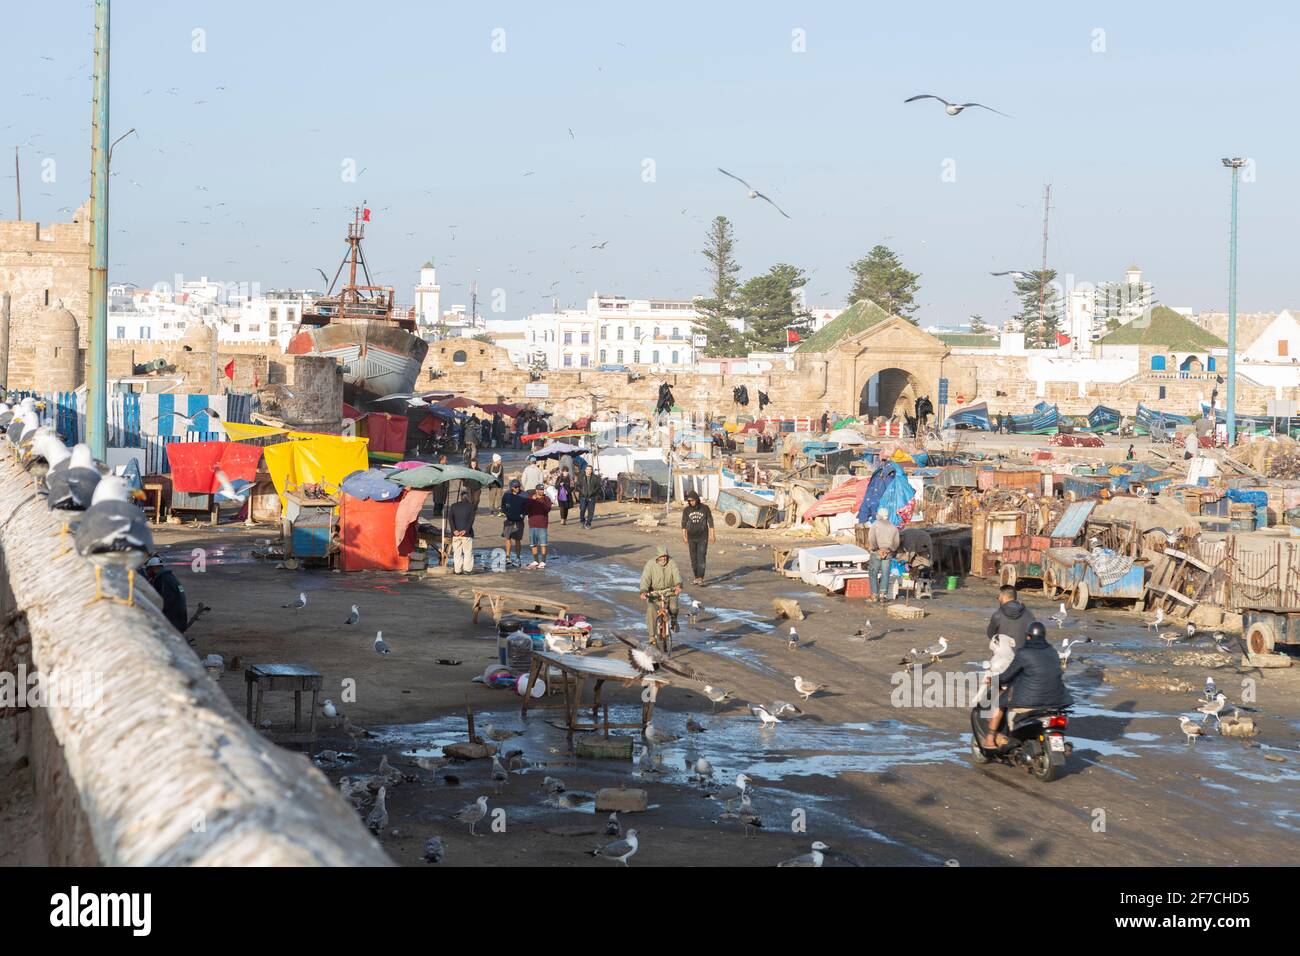 Bullicio y ajetreo en el puerto de Essaouira, Marruecos Foto de stock